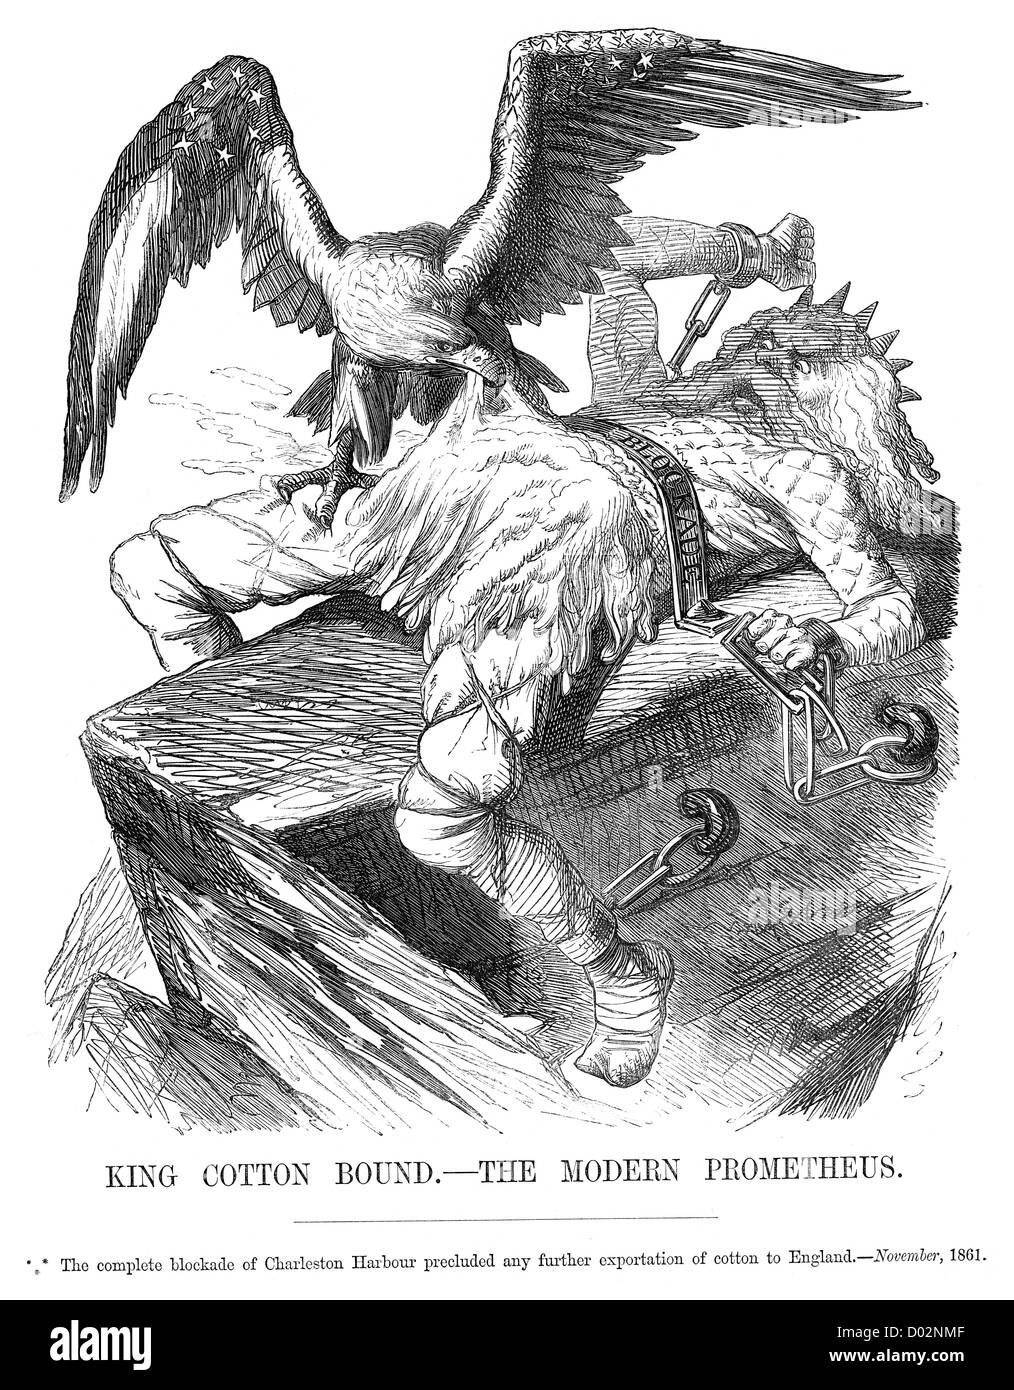 König Baumwolle gebunden das moderne Prometheus. Politische Karikatur über die Blockade von Charleston Hafen während des amerikanischen Bürgerkrieges Stockfoto